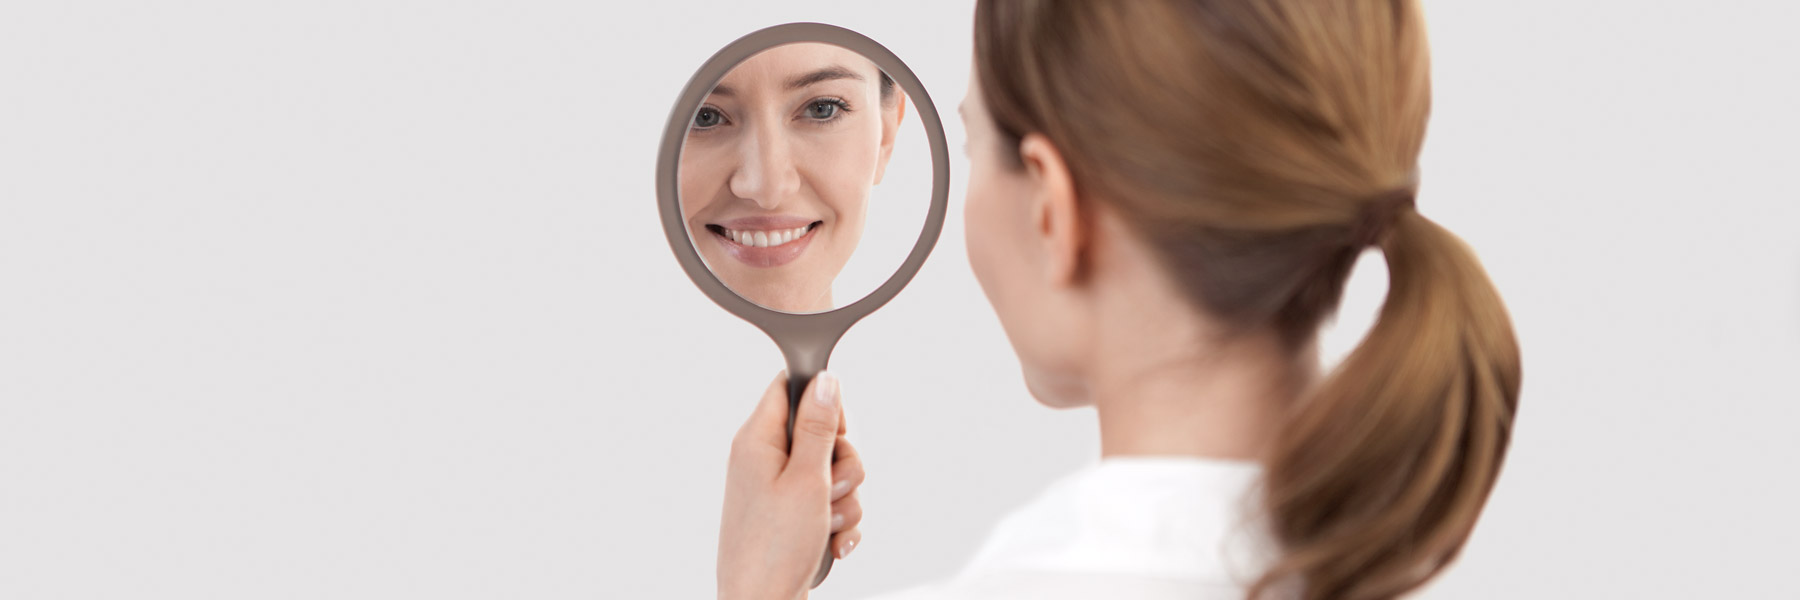 Frau mit schönen Zähnen betrachtet sich im Spiegel